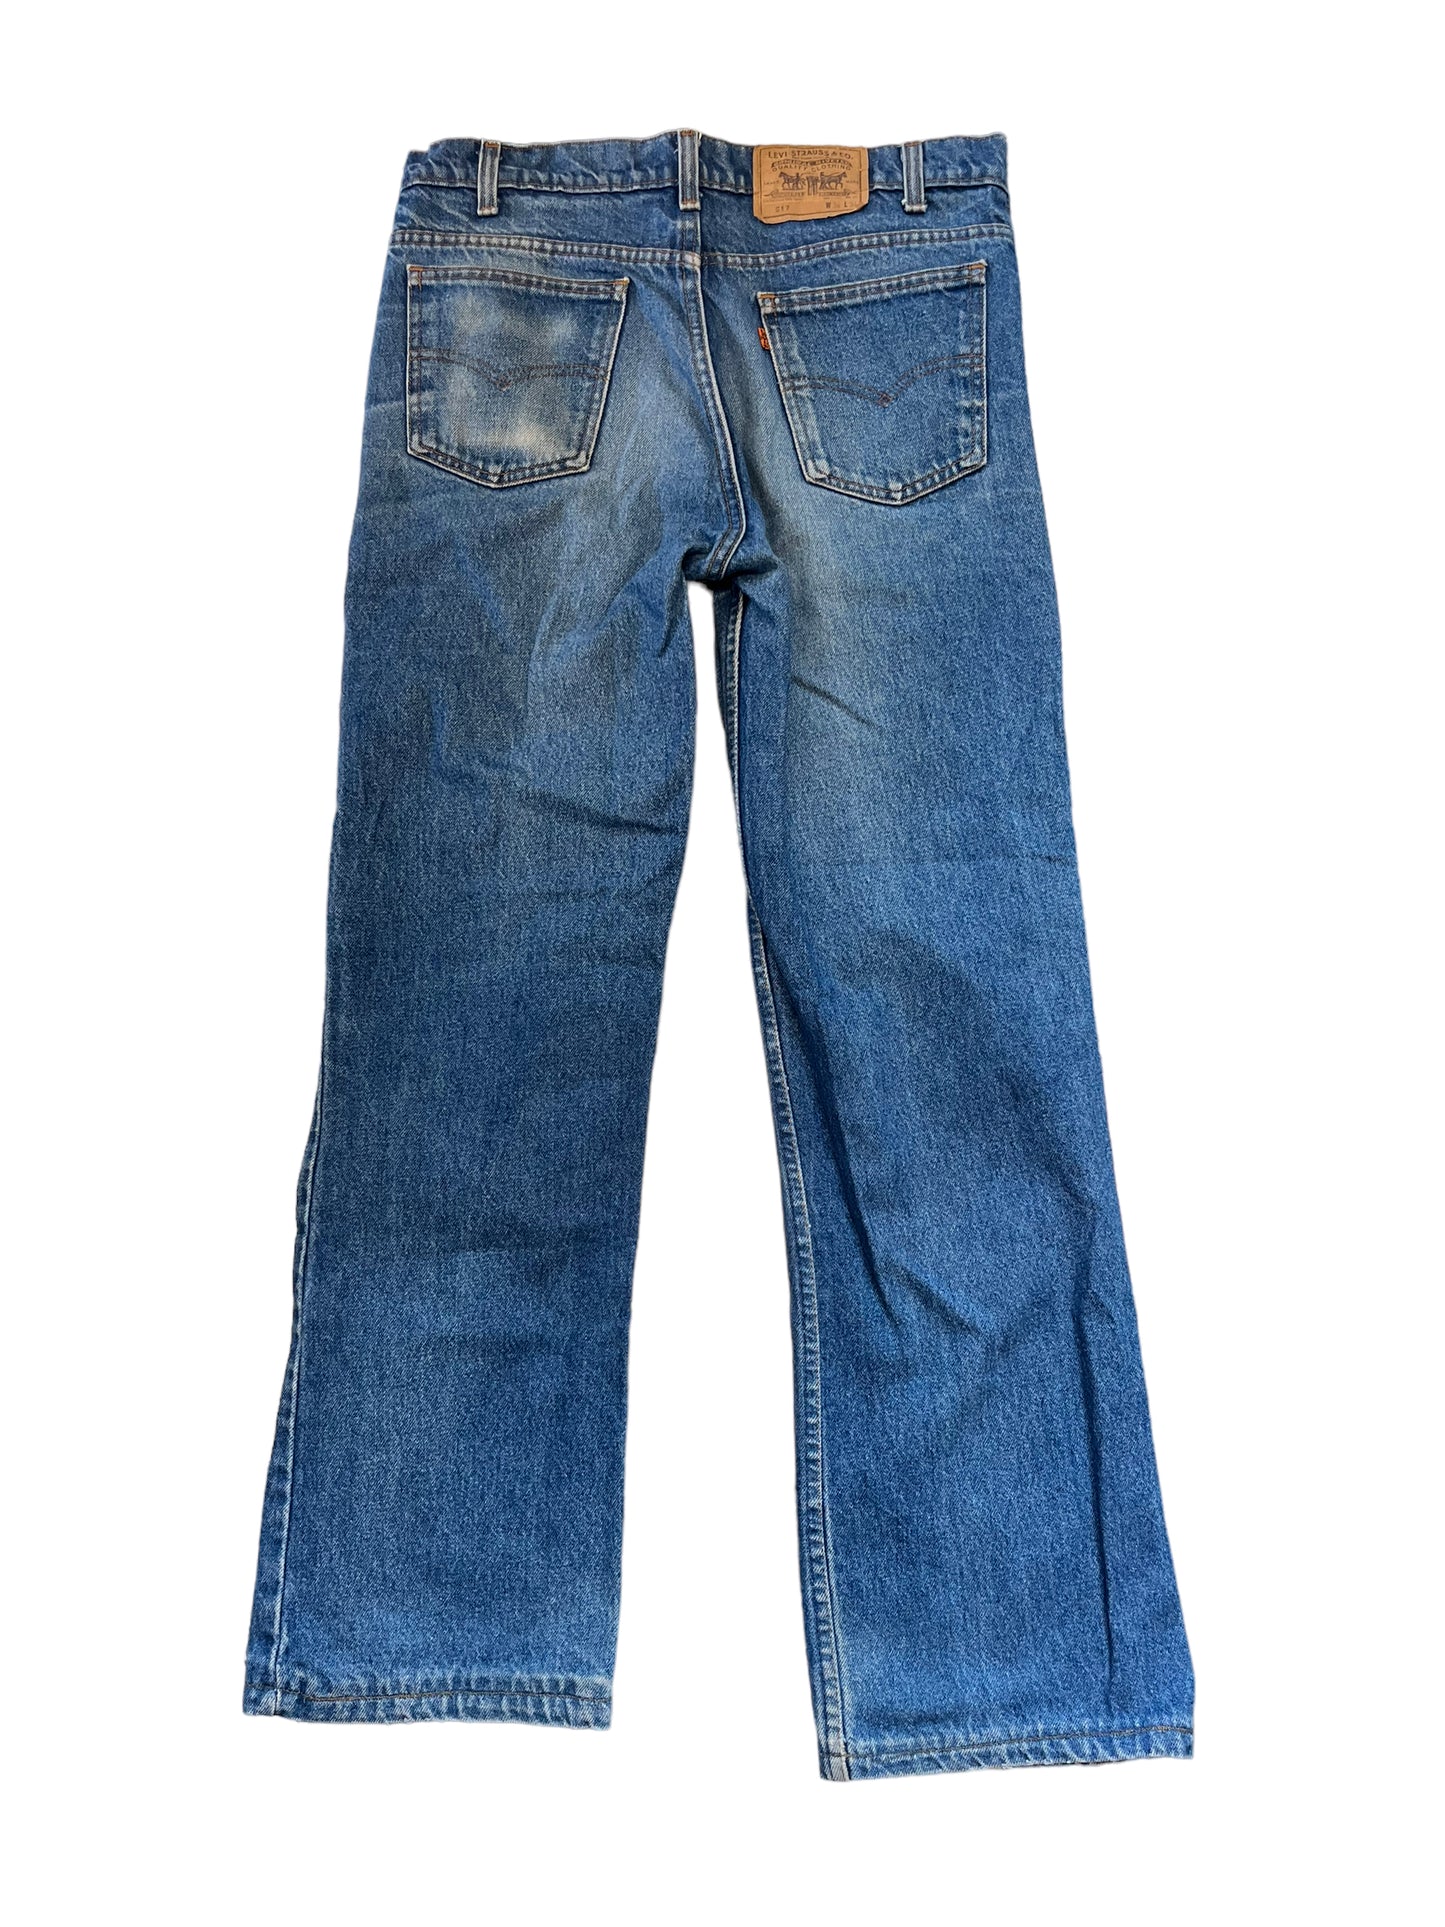 (32W x 30L) 1999 Levi’s 517 Orange Tab Jeans